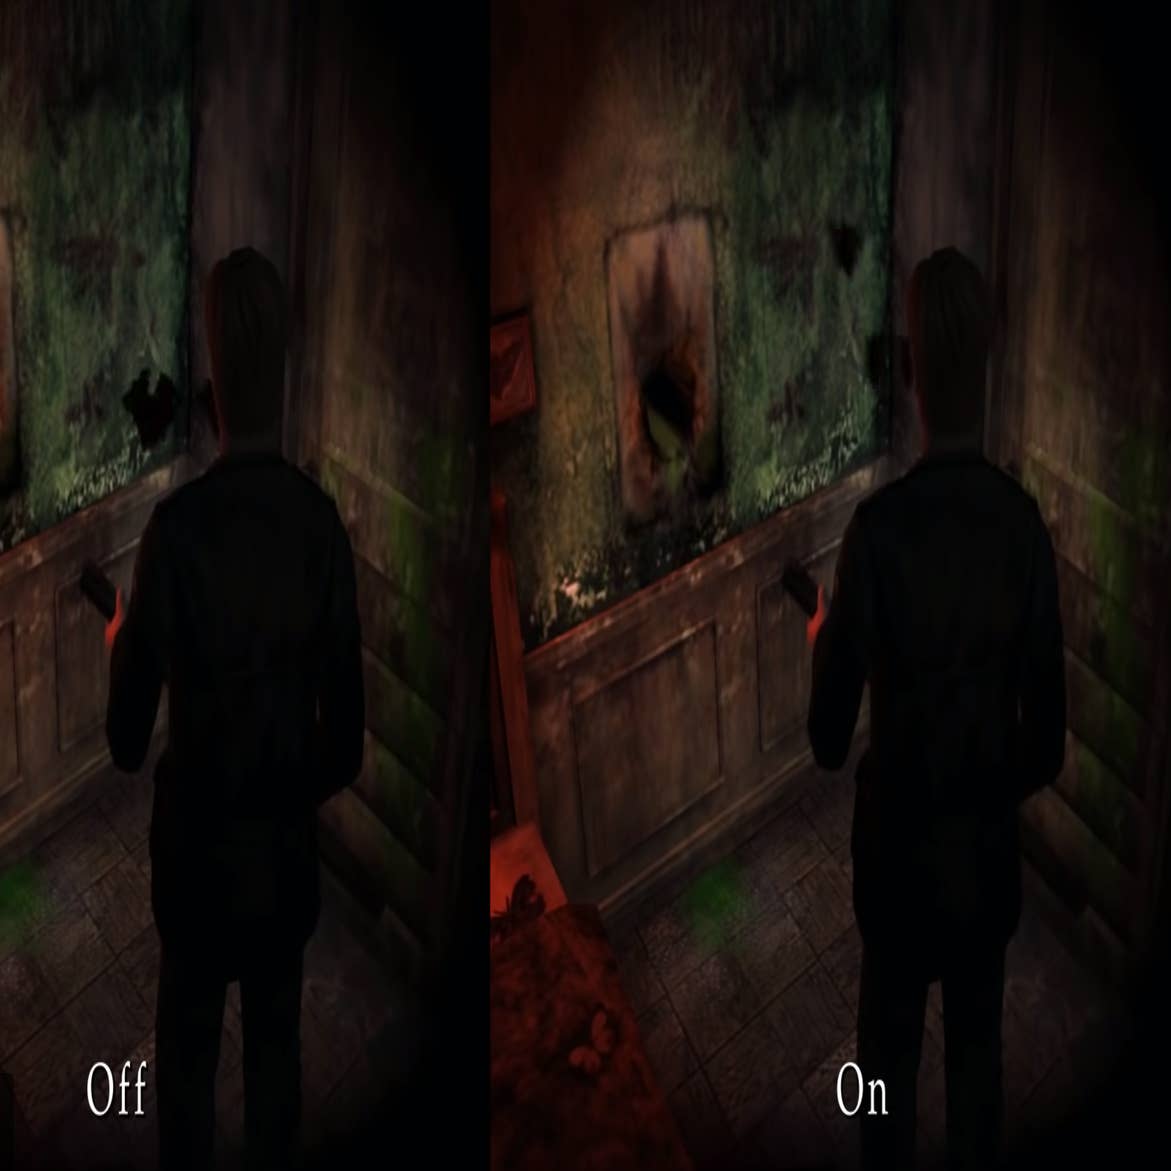 Silent Hill 2 Remake Development Still Underway, Confirms Developer